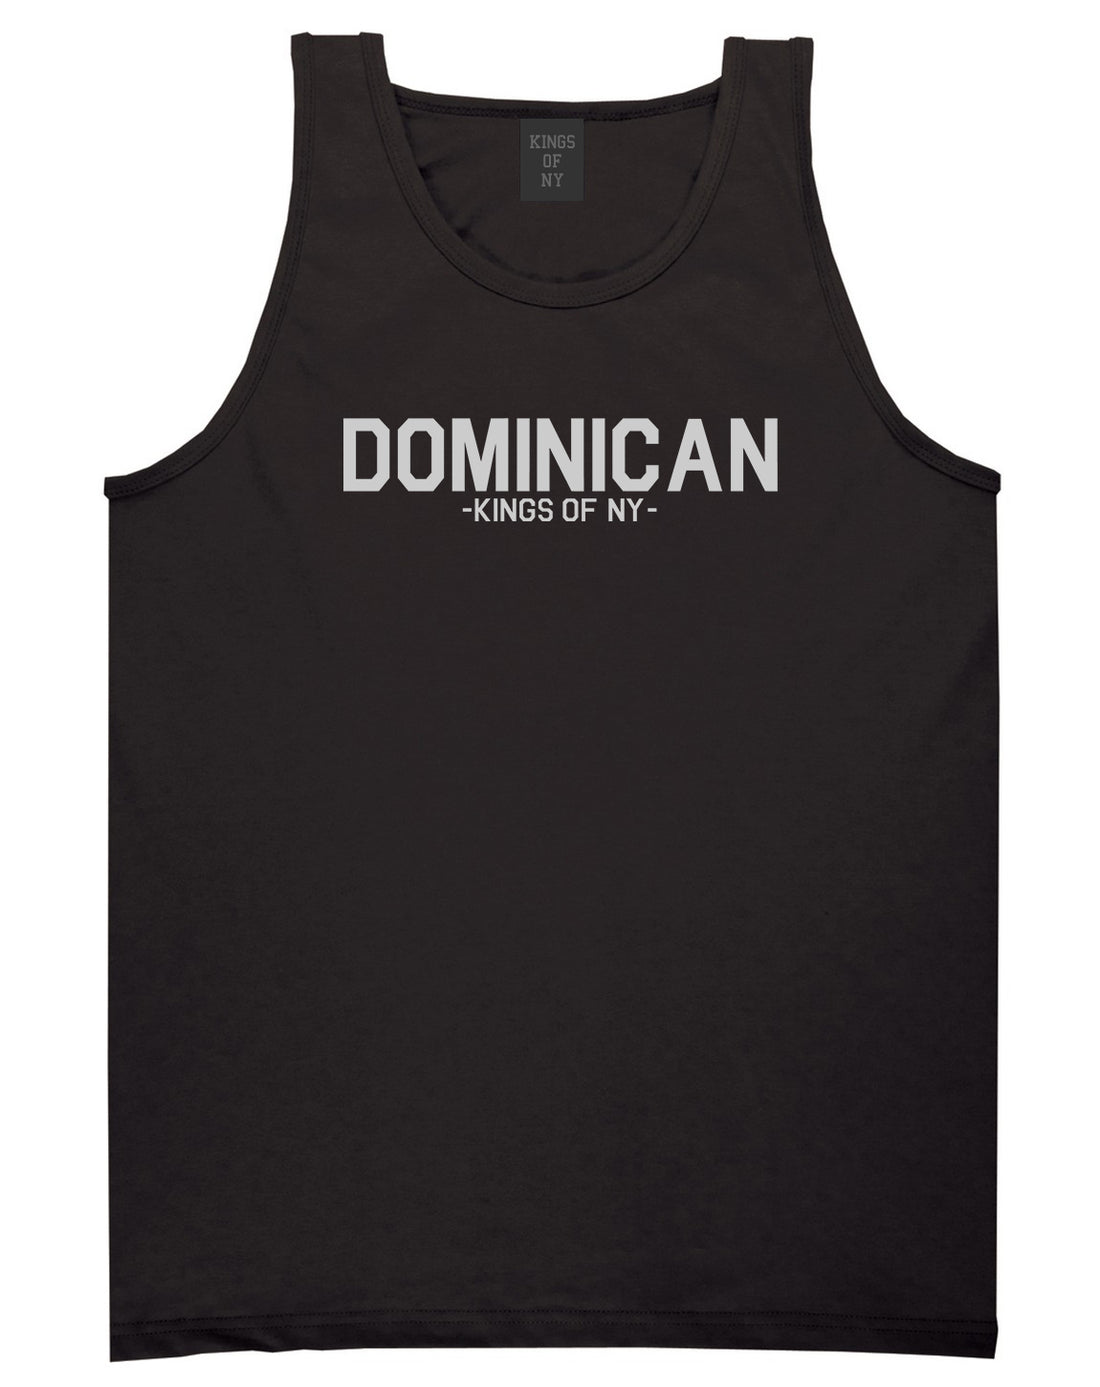 Dominican Kings Of NY Mens Tank Top Shirt Black